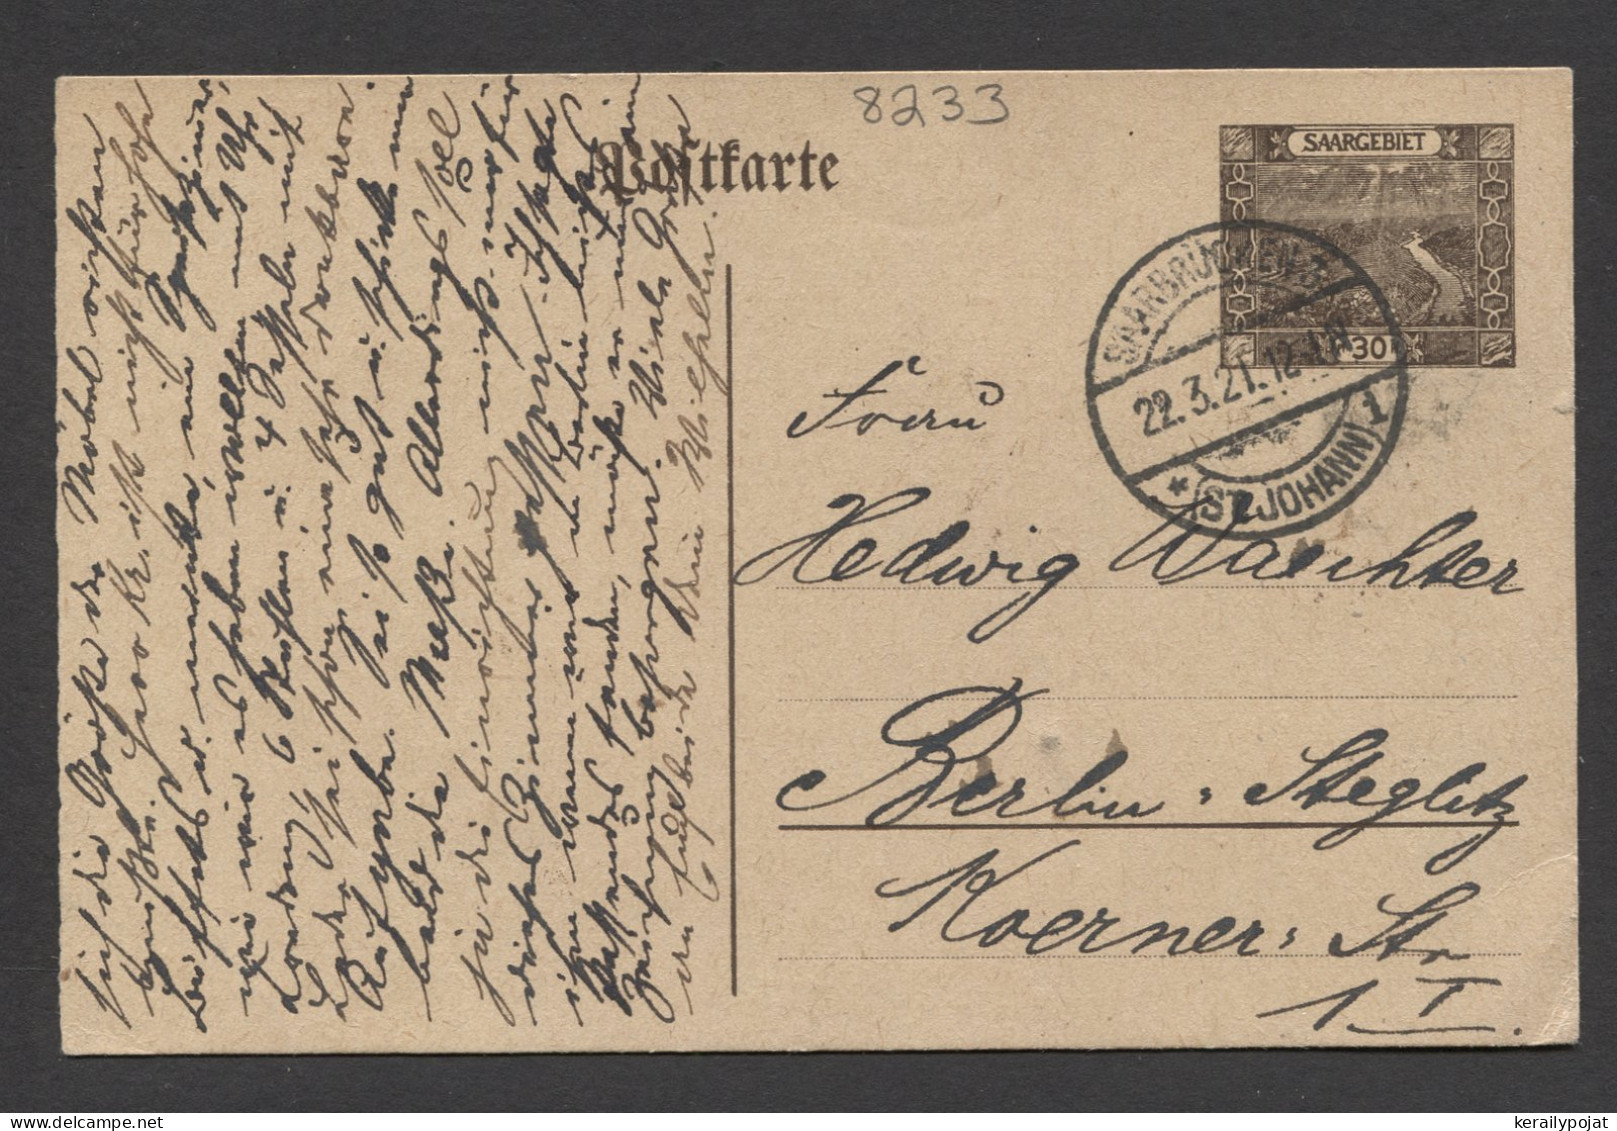 Saargebiet 1921 Saarbrucken 30c Stationery Card To Berlin__(8233) - Ganzsachen